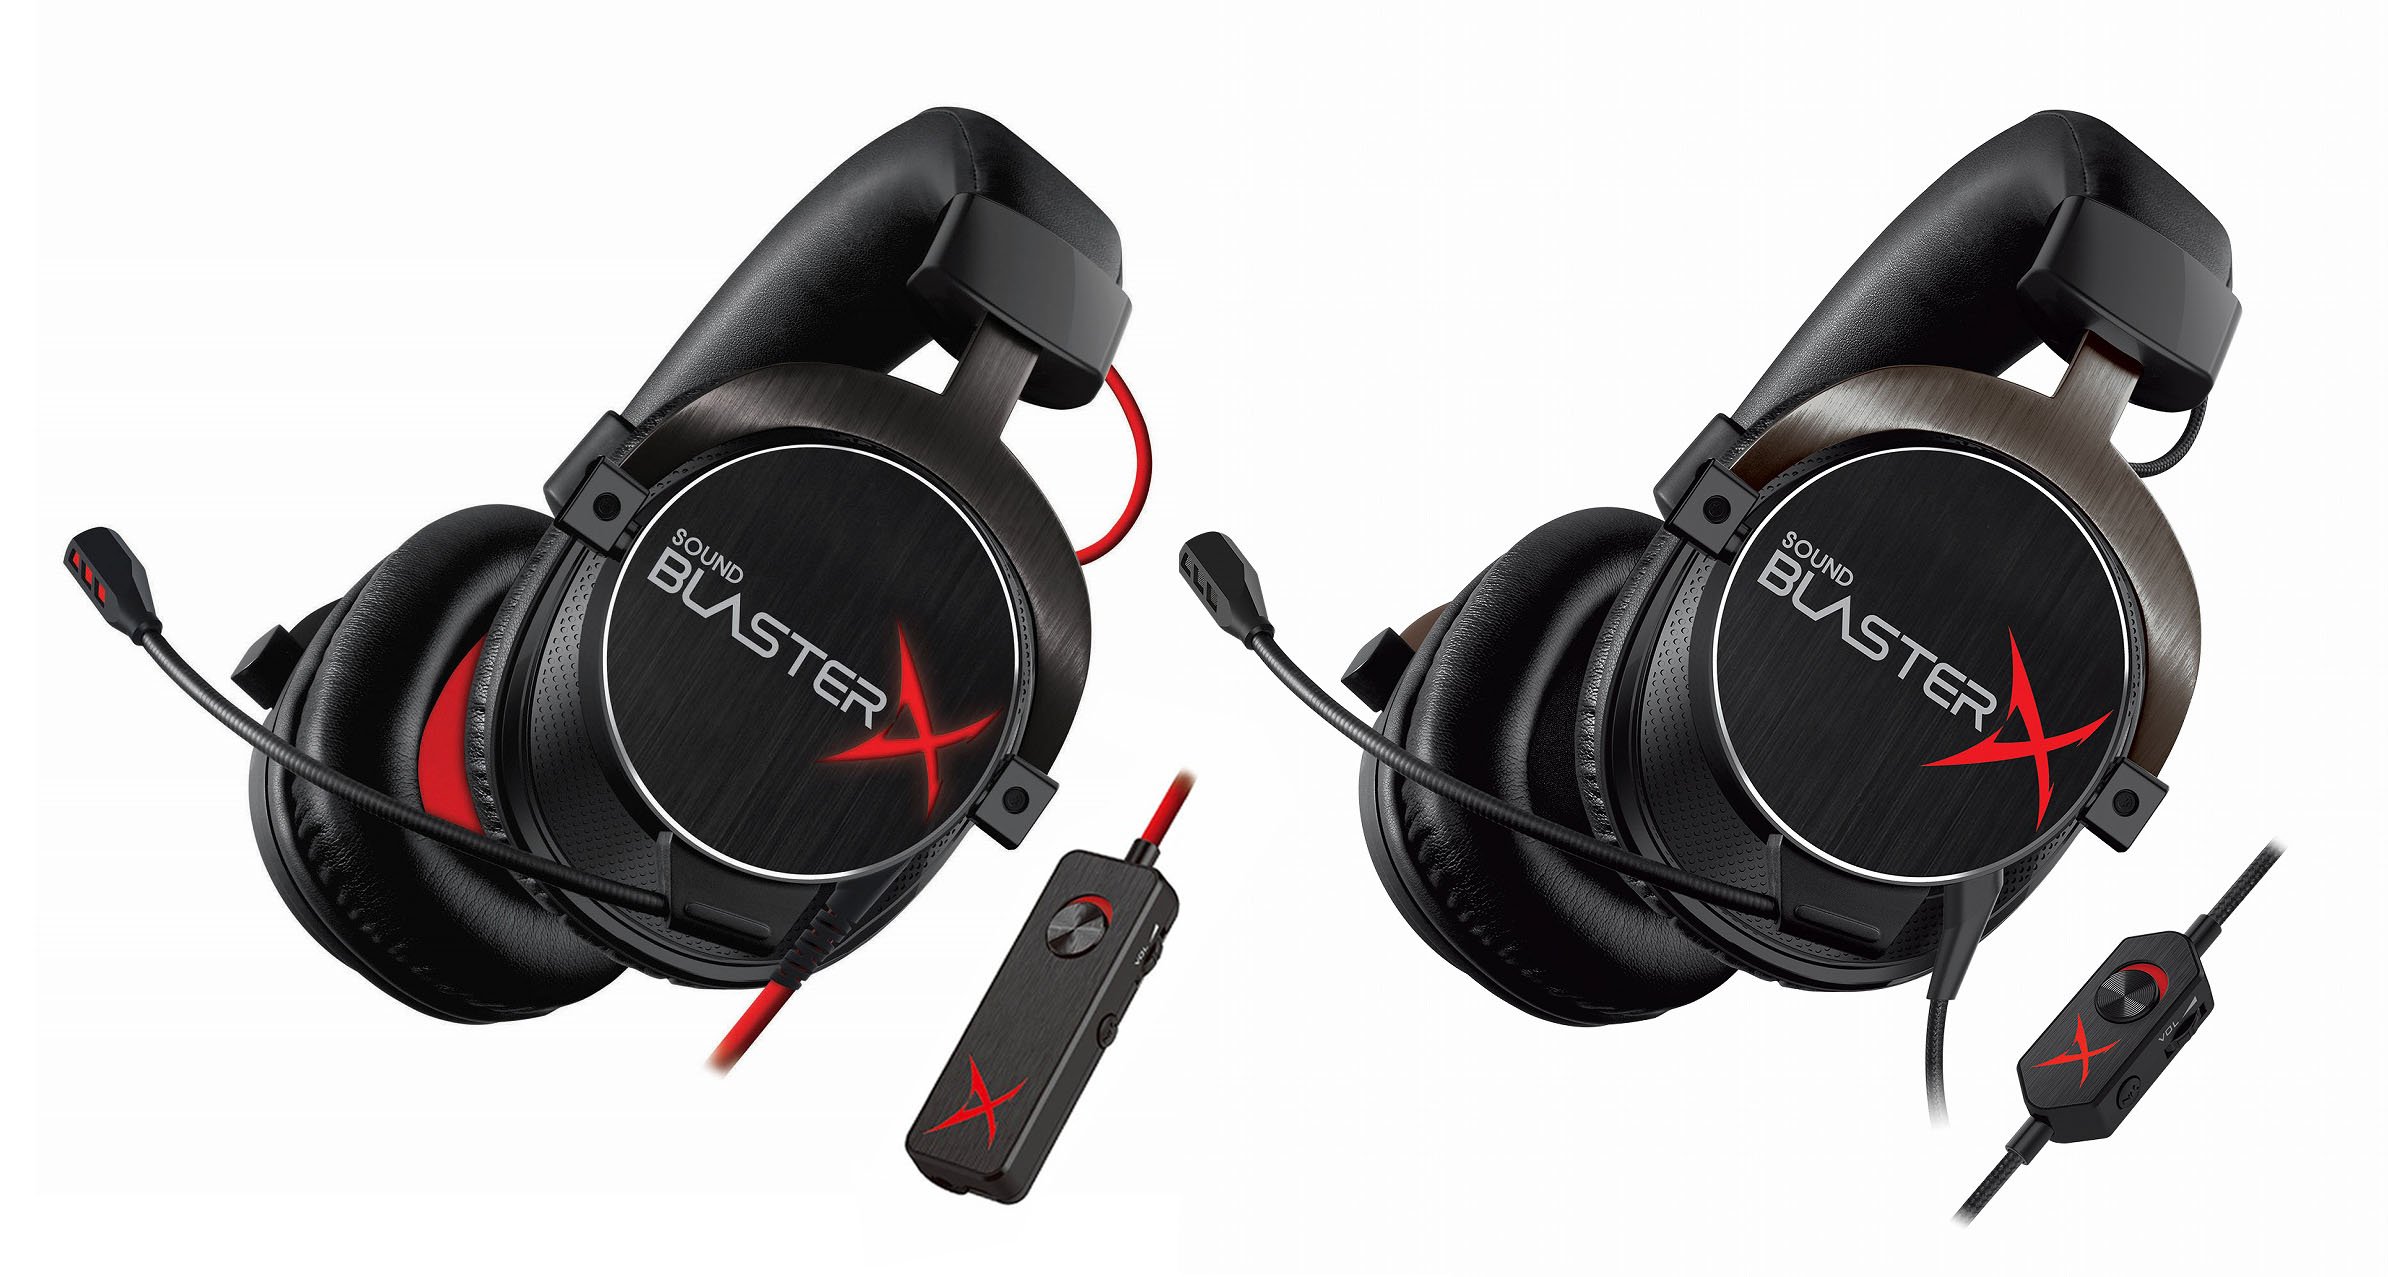 Sound Blasterx シリーズ ゲーミング ヘッドセット のトーナメント エディション 2製品 クリエイティブメディア 株式会社のプレスリリース